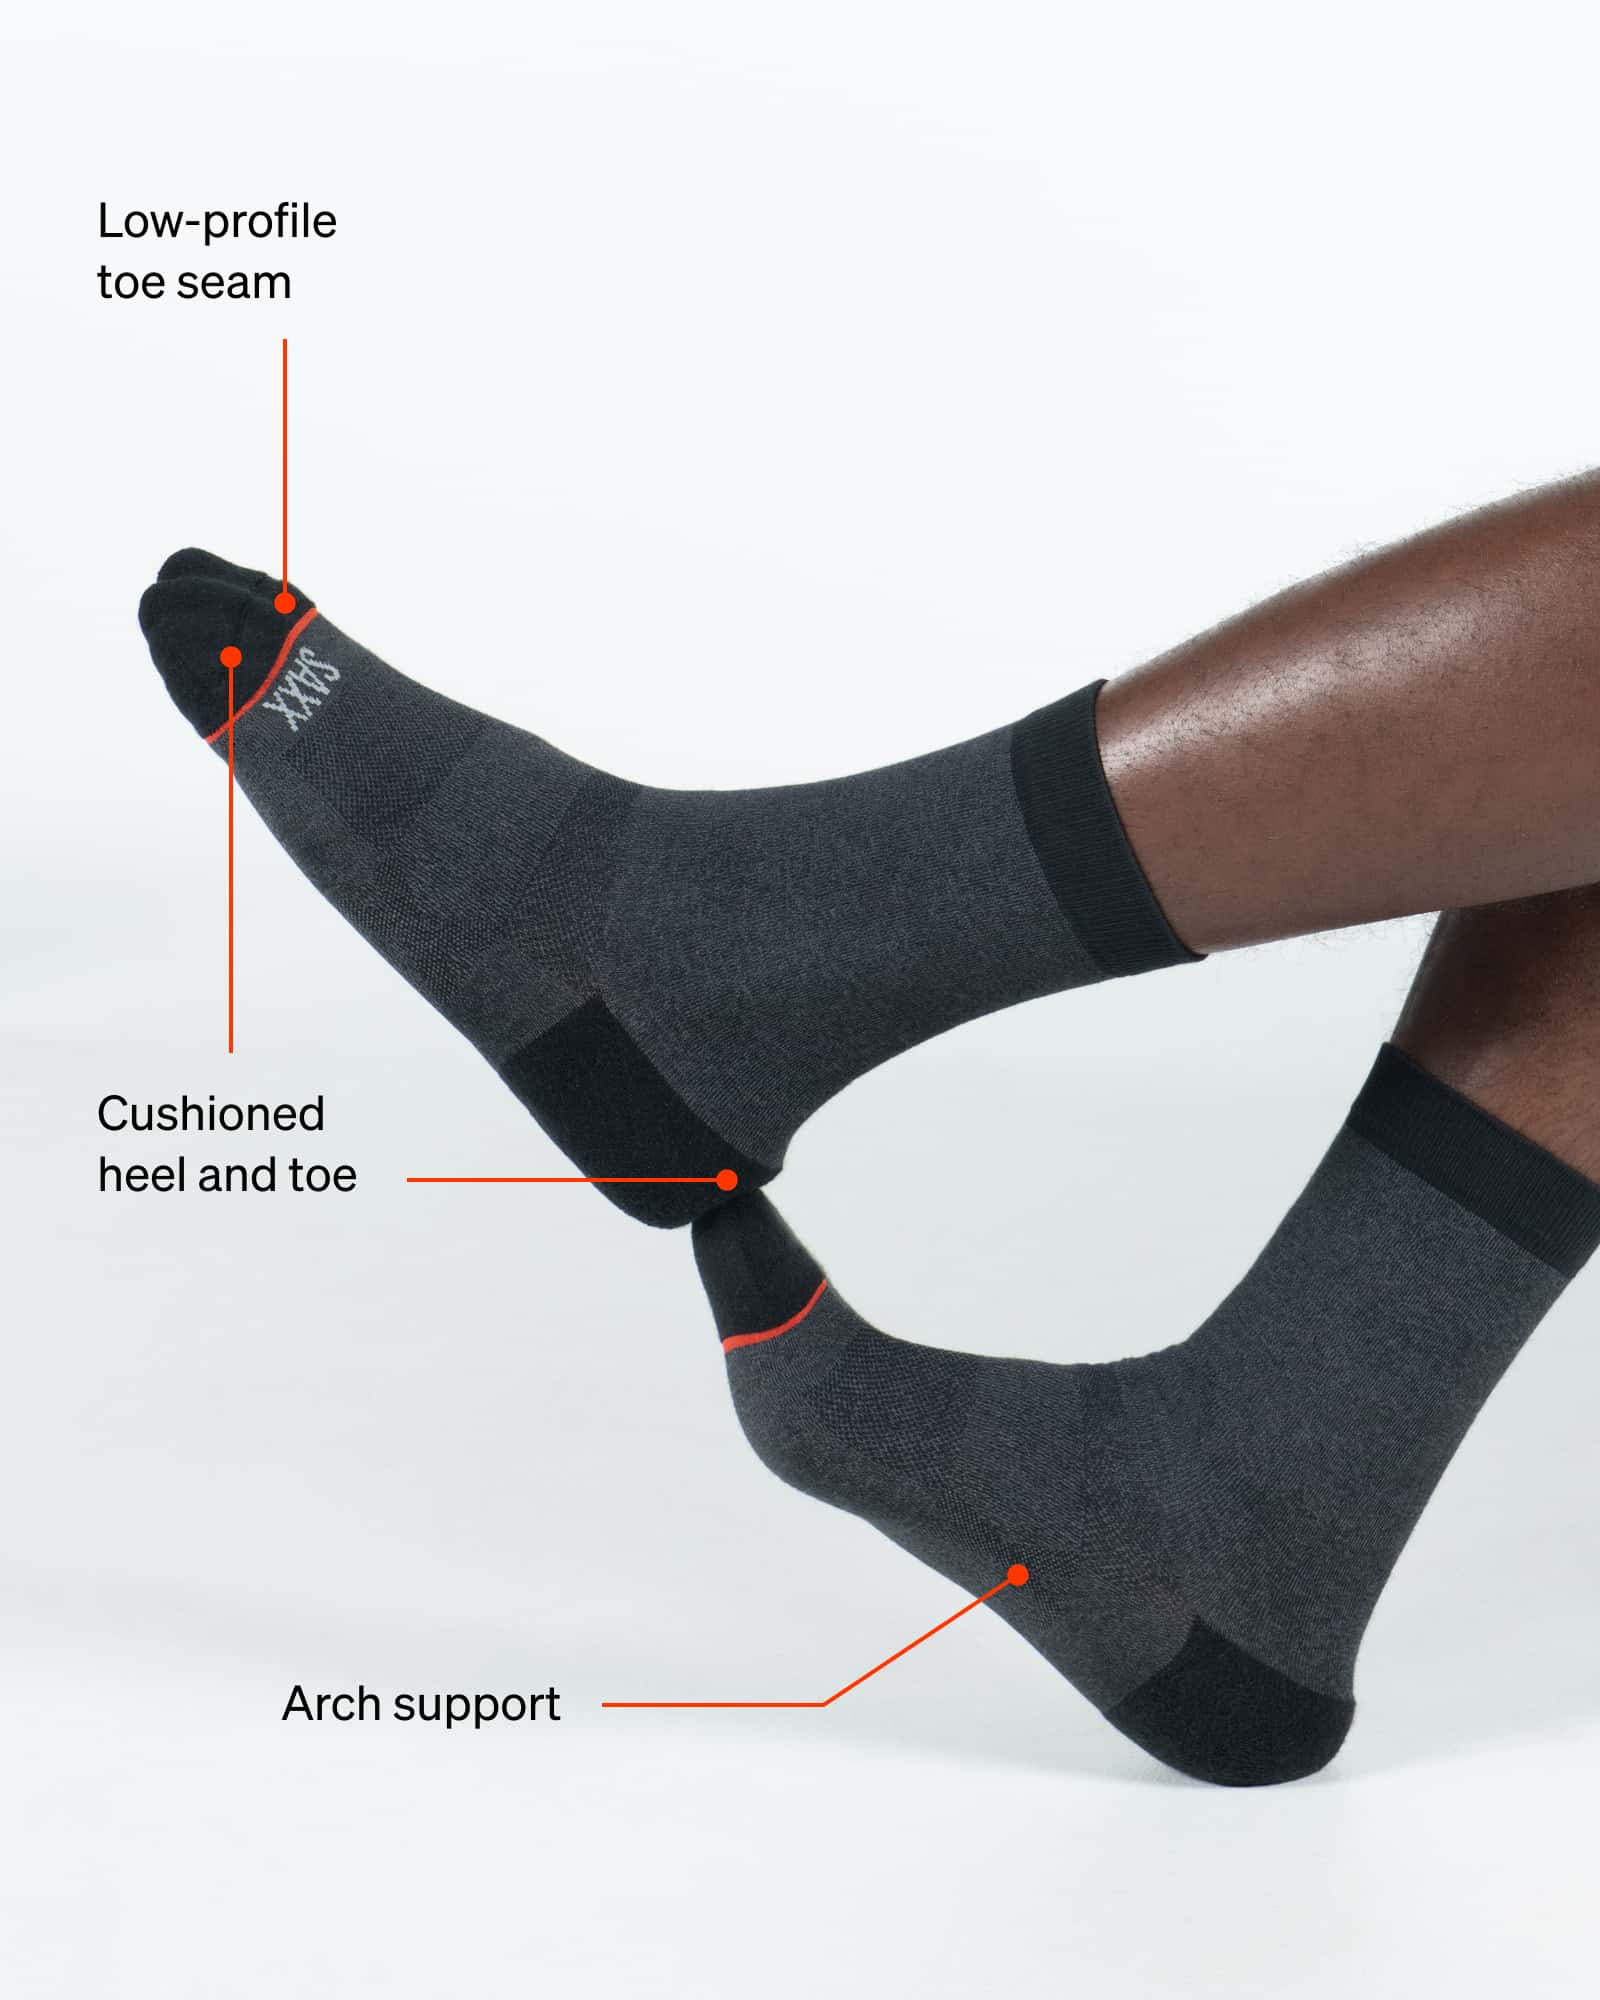 SAXX Underwear Crew Sock technology graphic